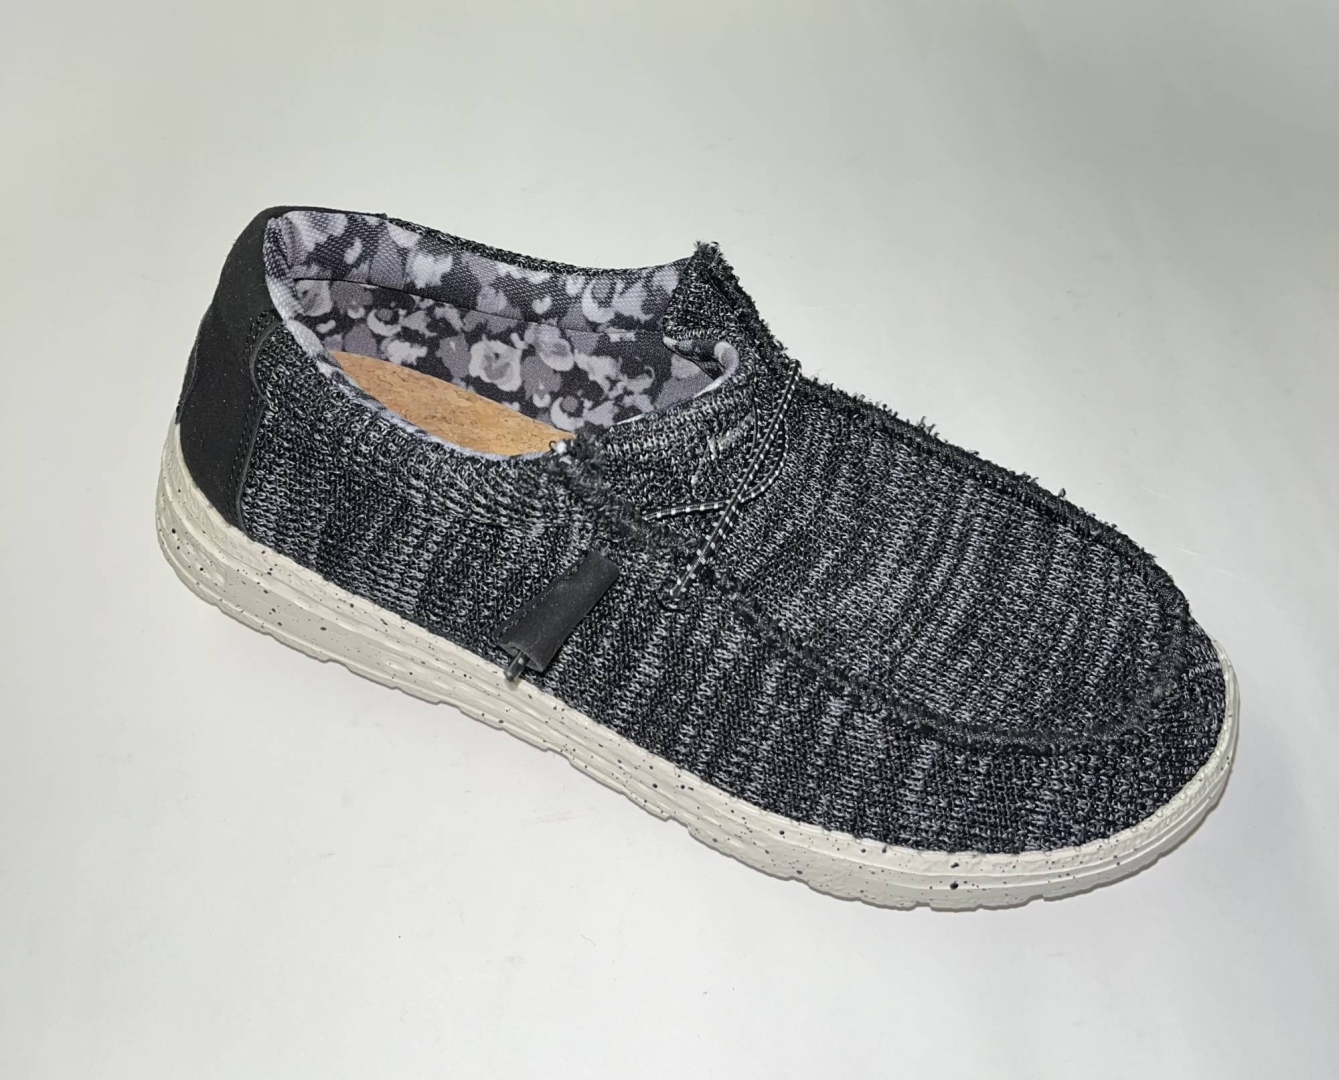 Zapato tipo wallabee en textil negro y gris 23812 de KELARA. H-388